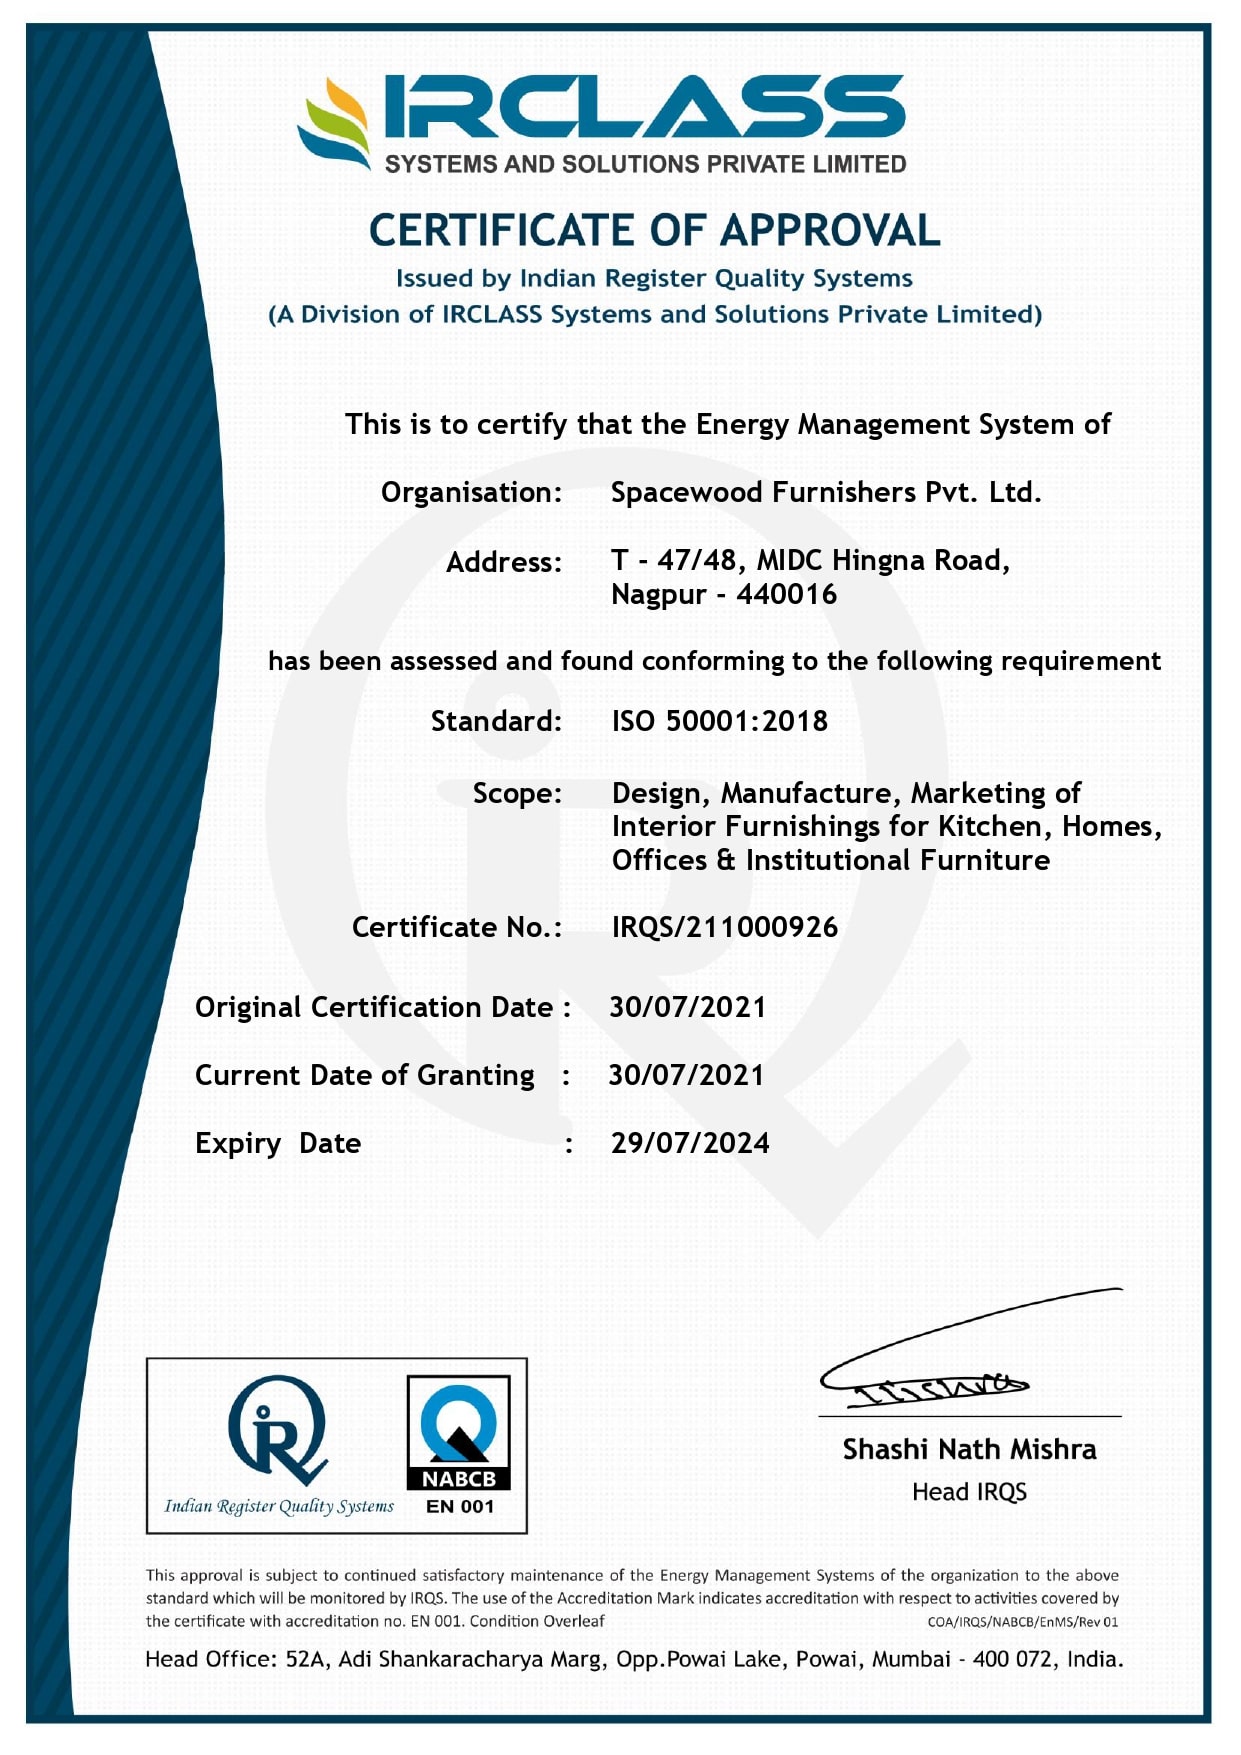 50001 certificate